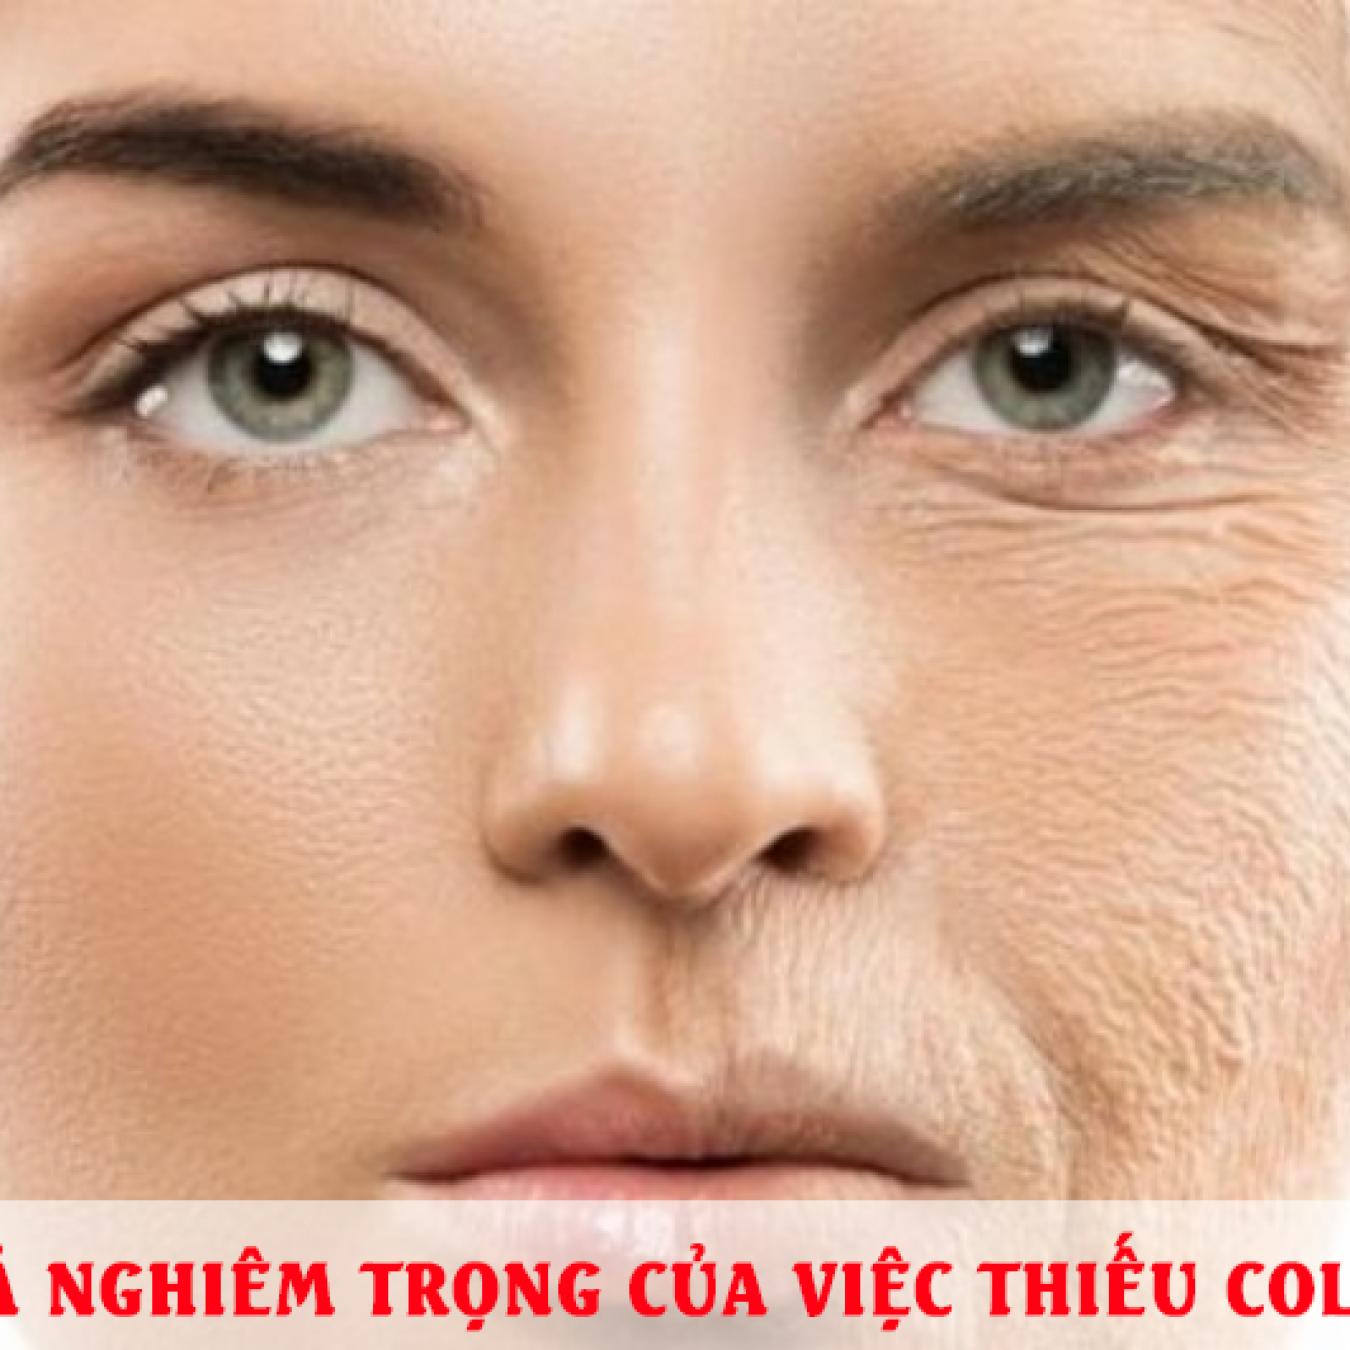 Hậu quả nghiêm trọng của việc thiếu collagen